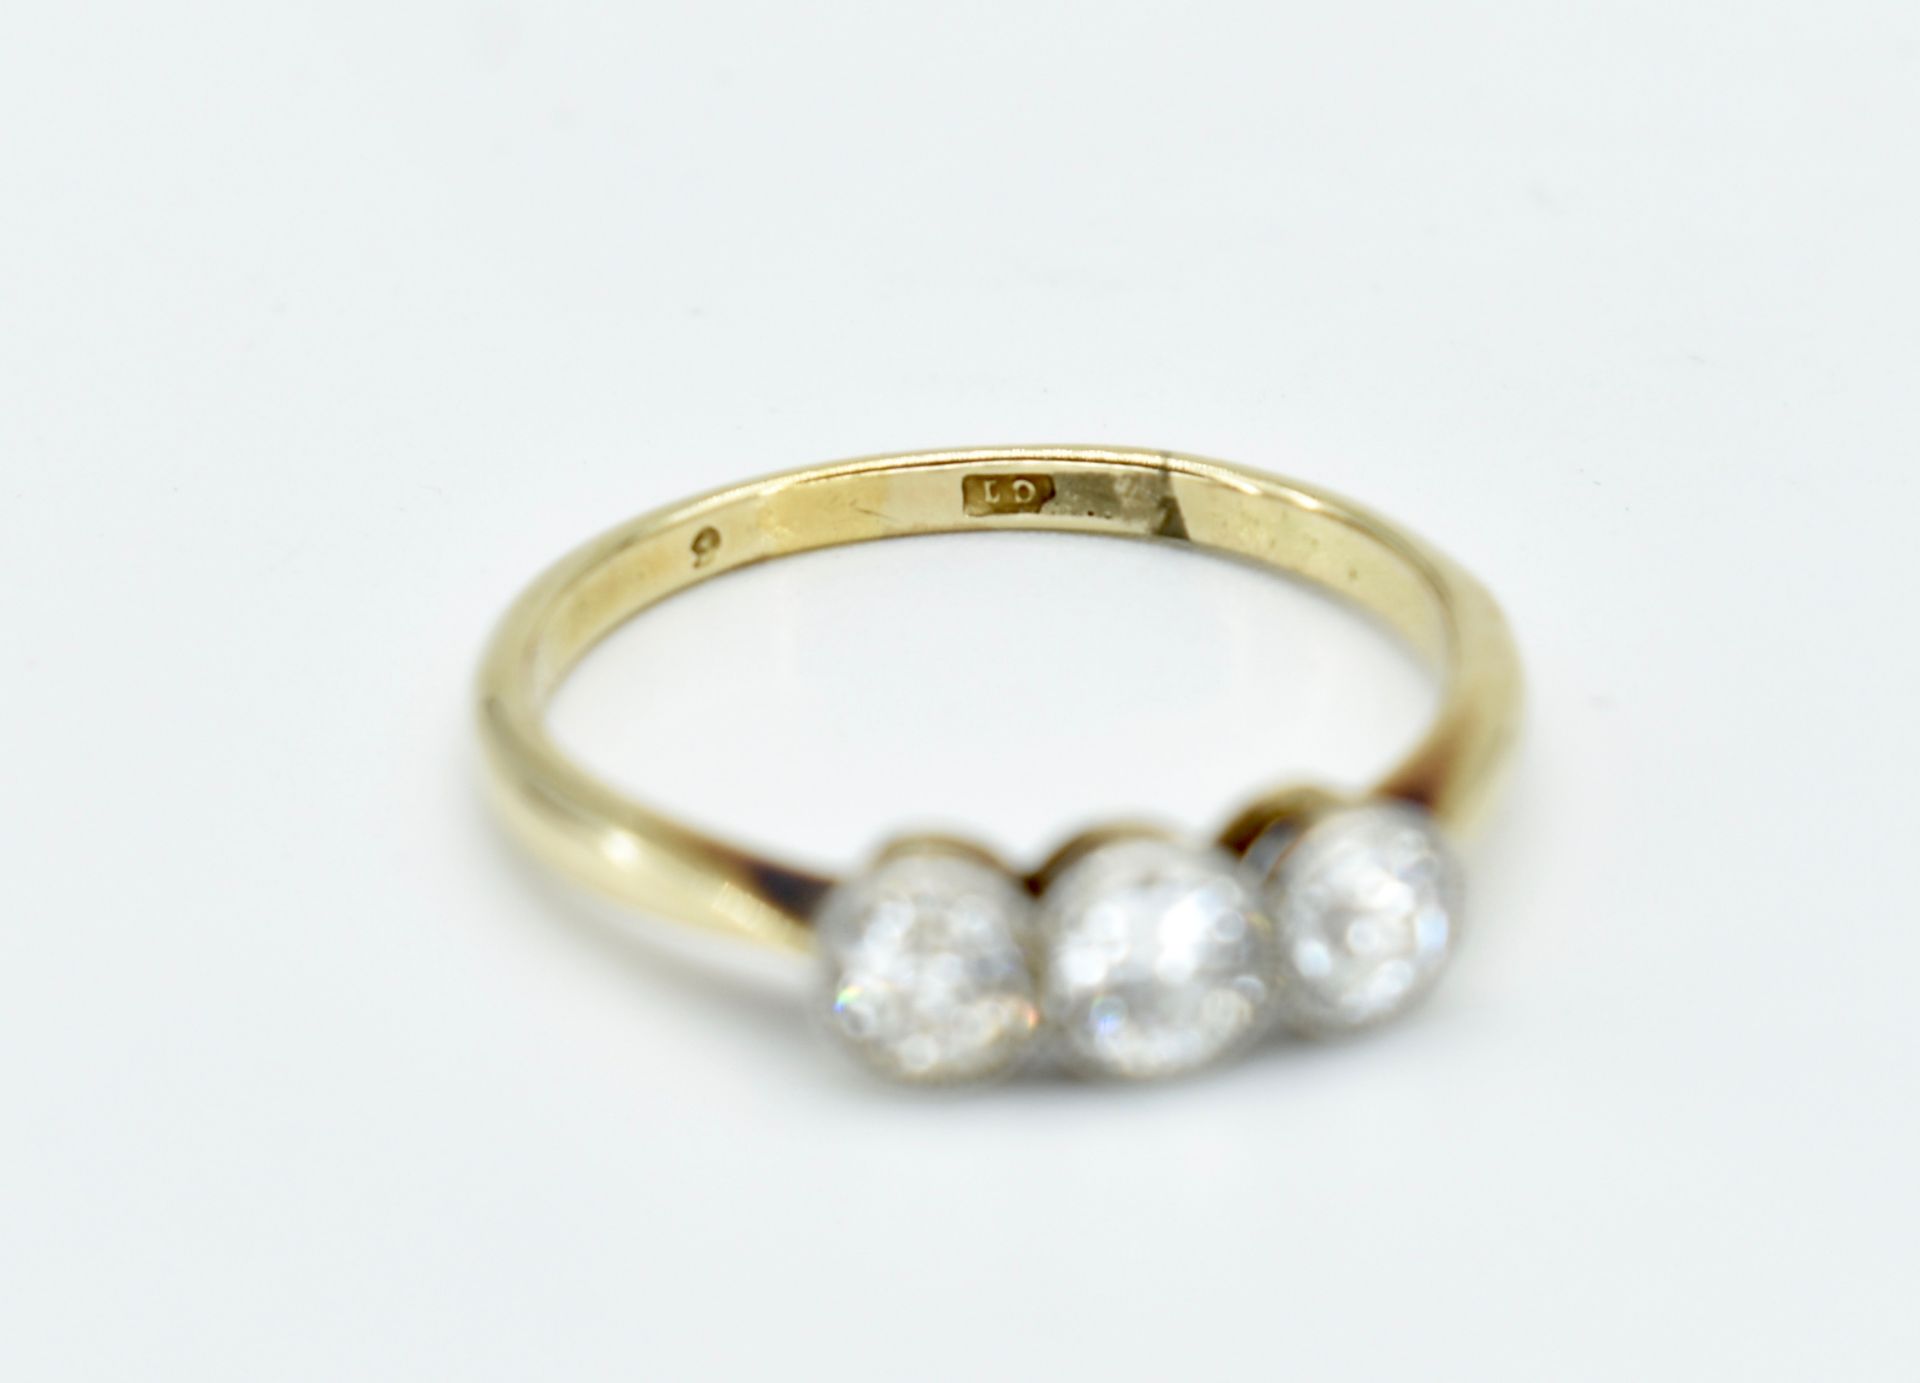 Circa 1920's Diamond Three Stone Ring - Image 2 of 4